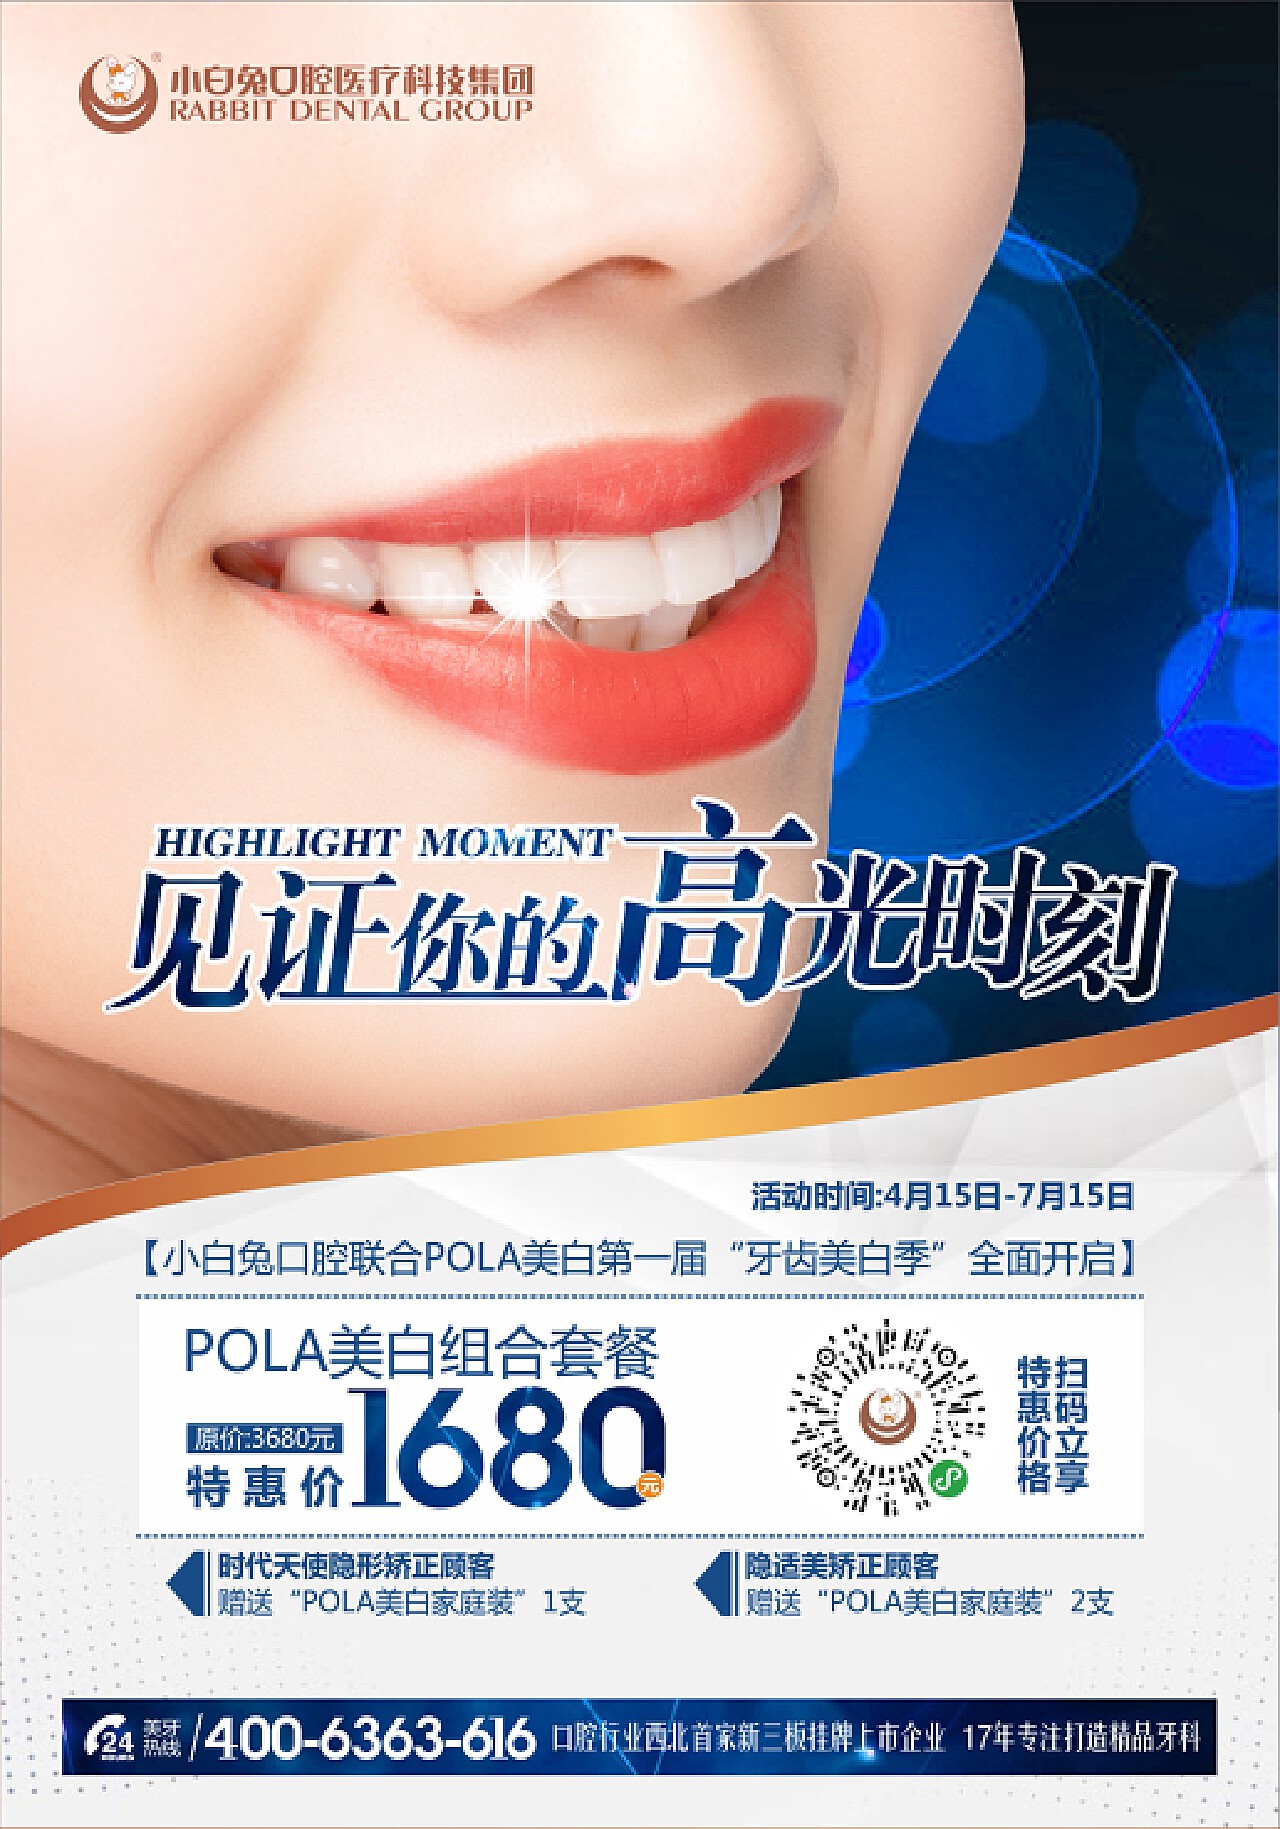 【牙齿美白】PS的技术美or健康自然的美，你选哪一个?_广州德伦口腔